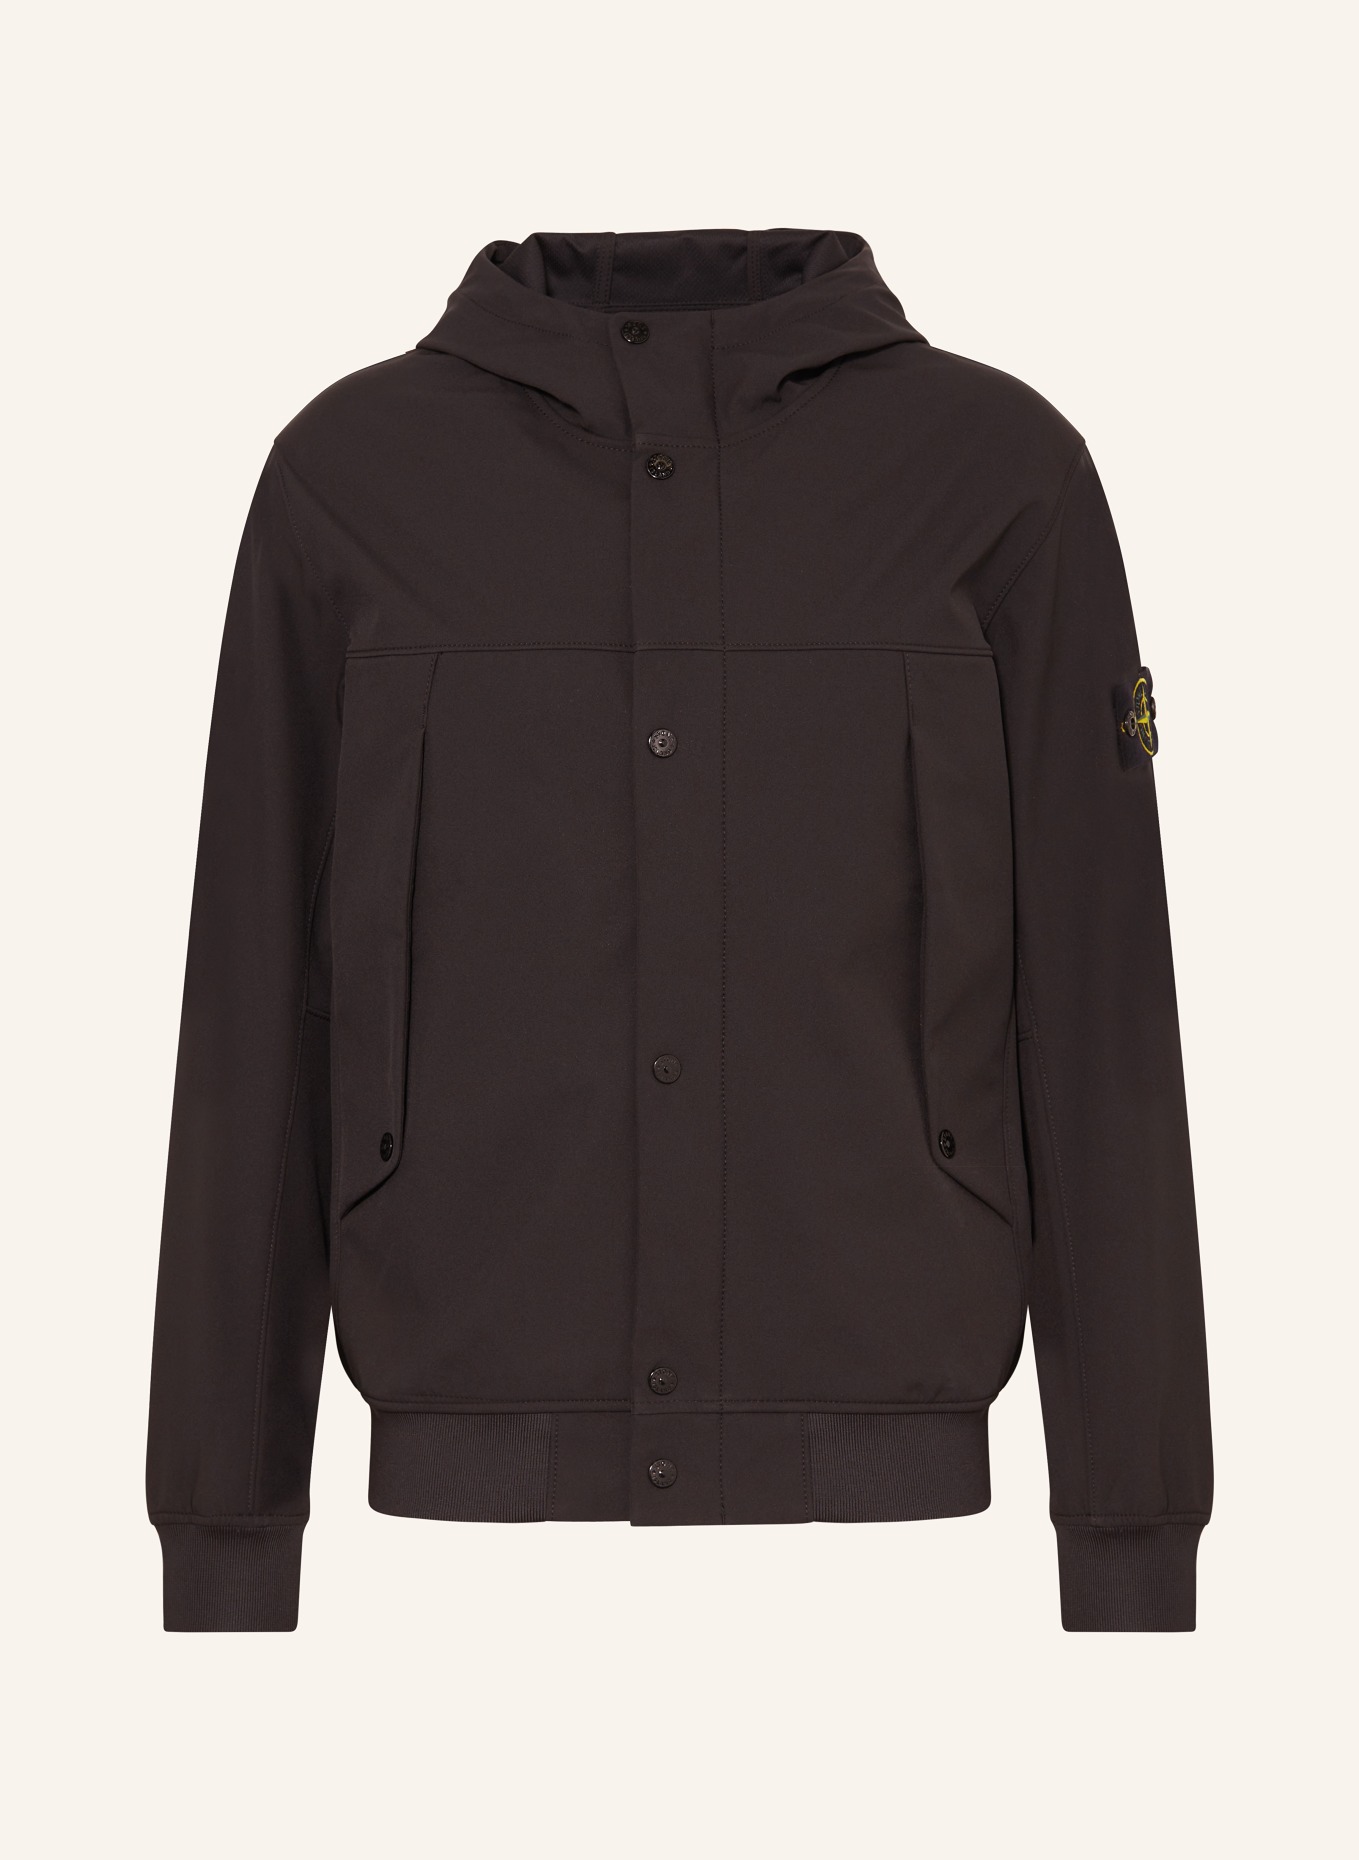 STONE ISLAND Softshell jacket, Color: BLACK (Image 1)